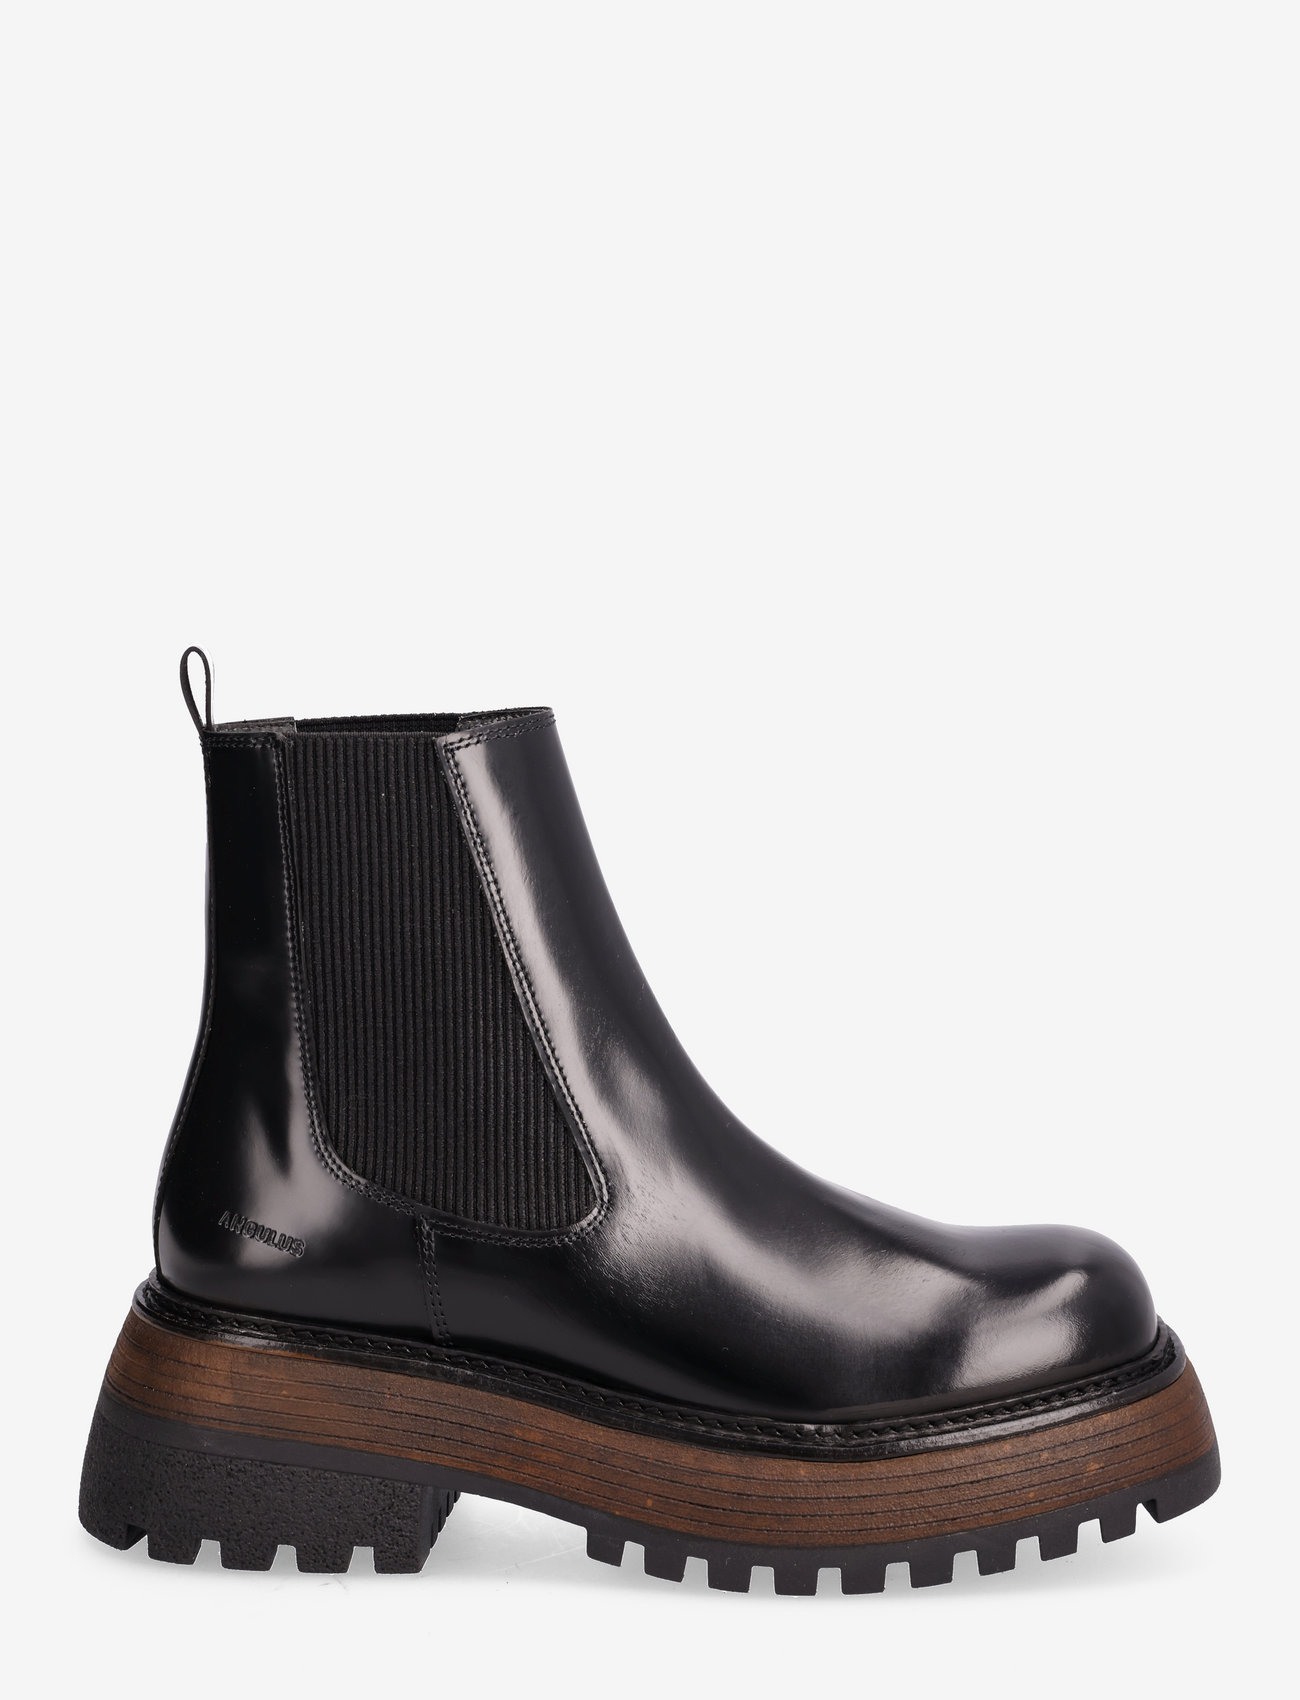 ANGULUS - Boots - flat - chelsea-saapad - 1425/019 black/black - 1